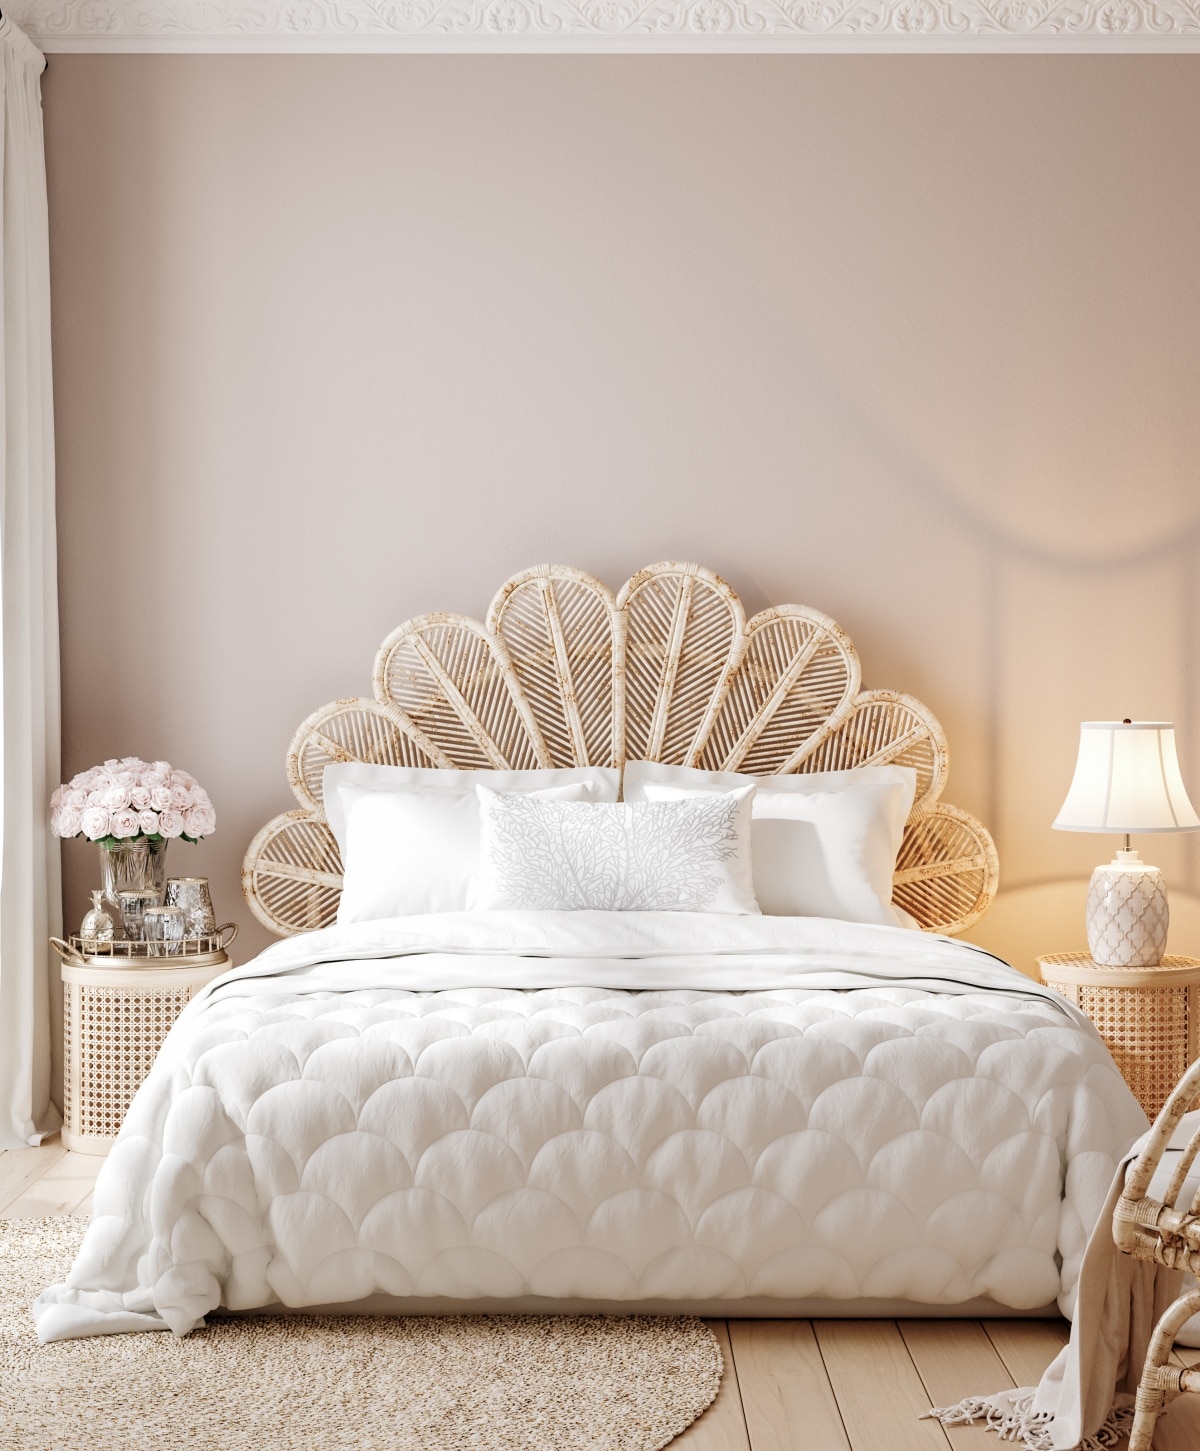 Bed with flower-like feminine headboard in a luxury bedroom